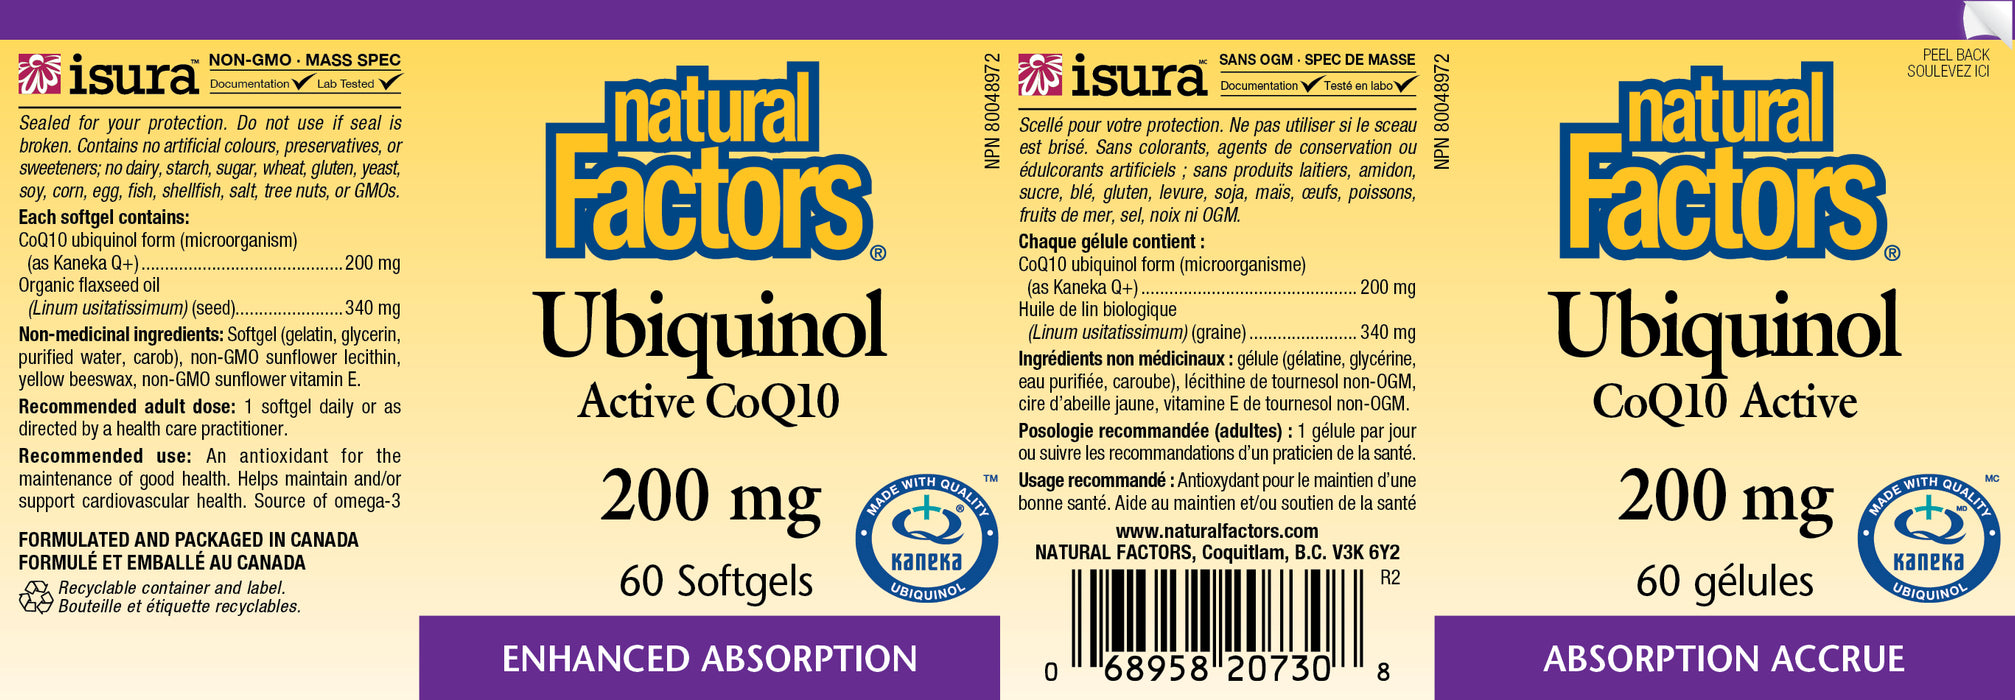 Natural Factors Ubiquinol Active CoQ10 200mg 60 Softgels